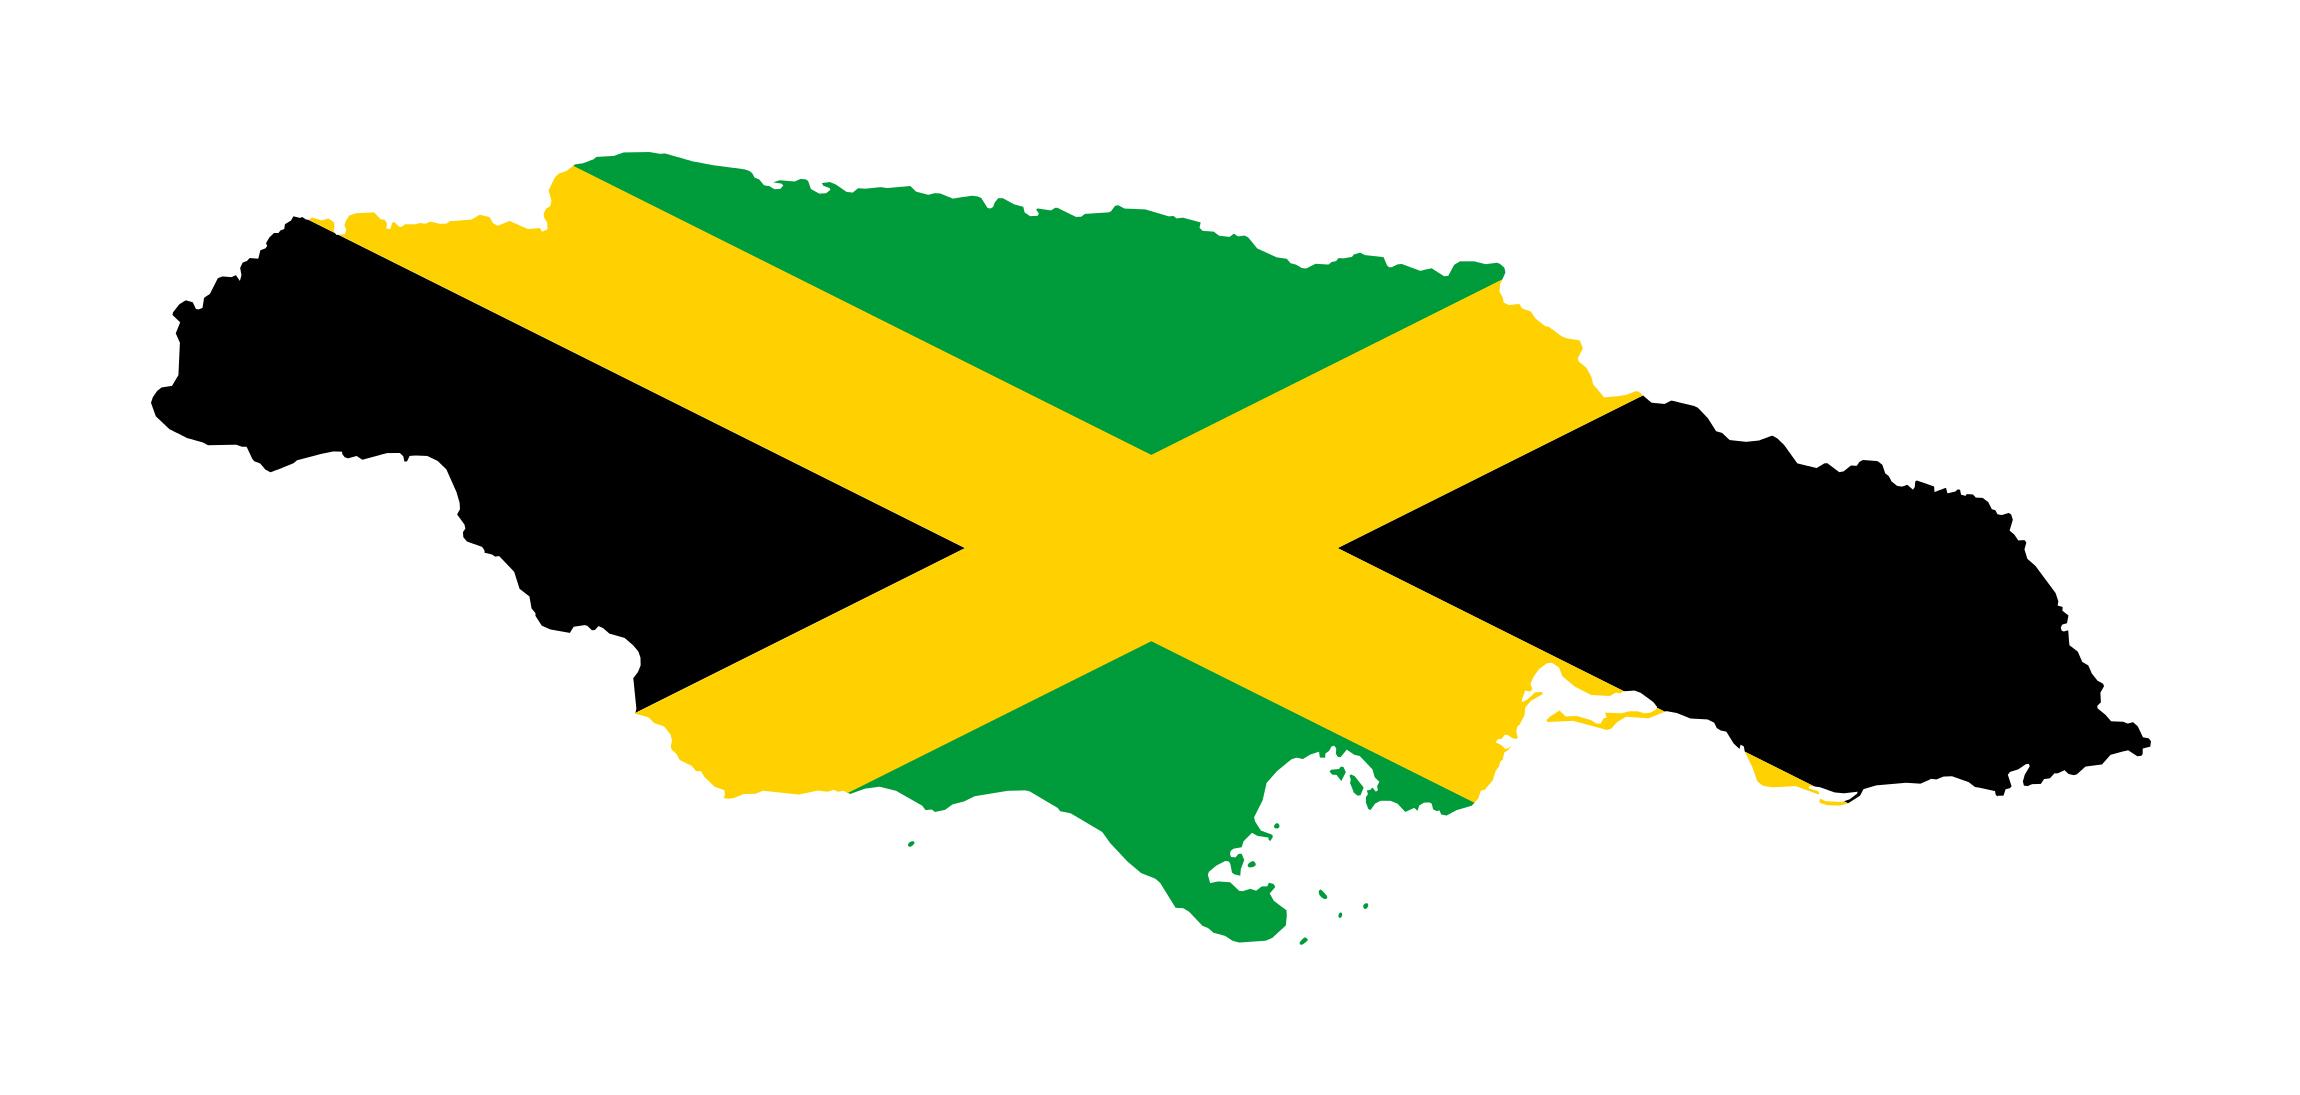 Флаг Ямайки Фото